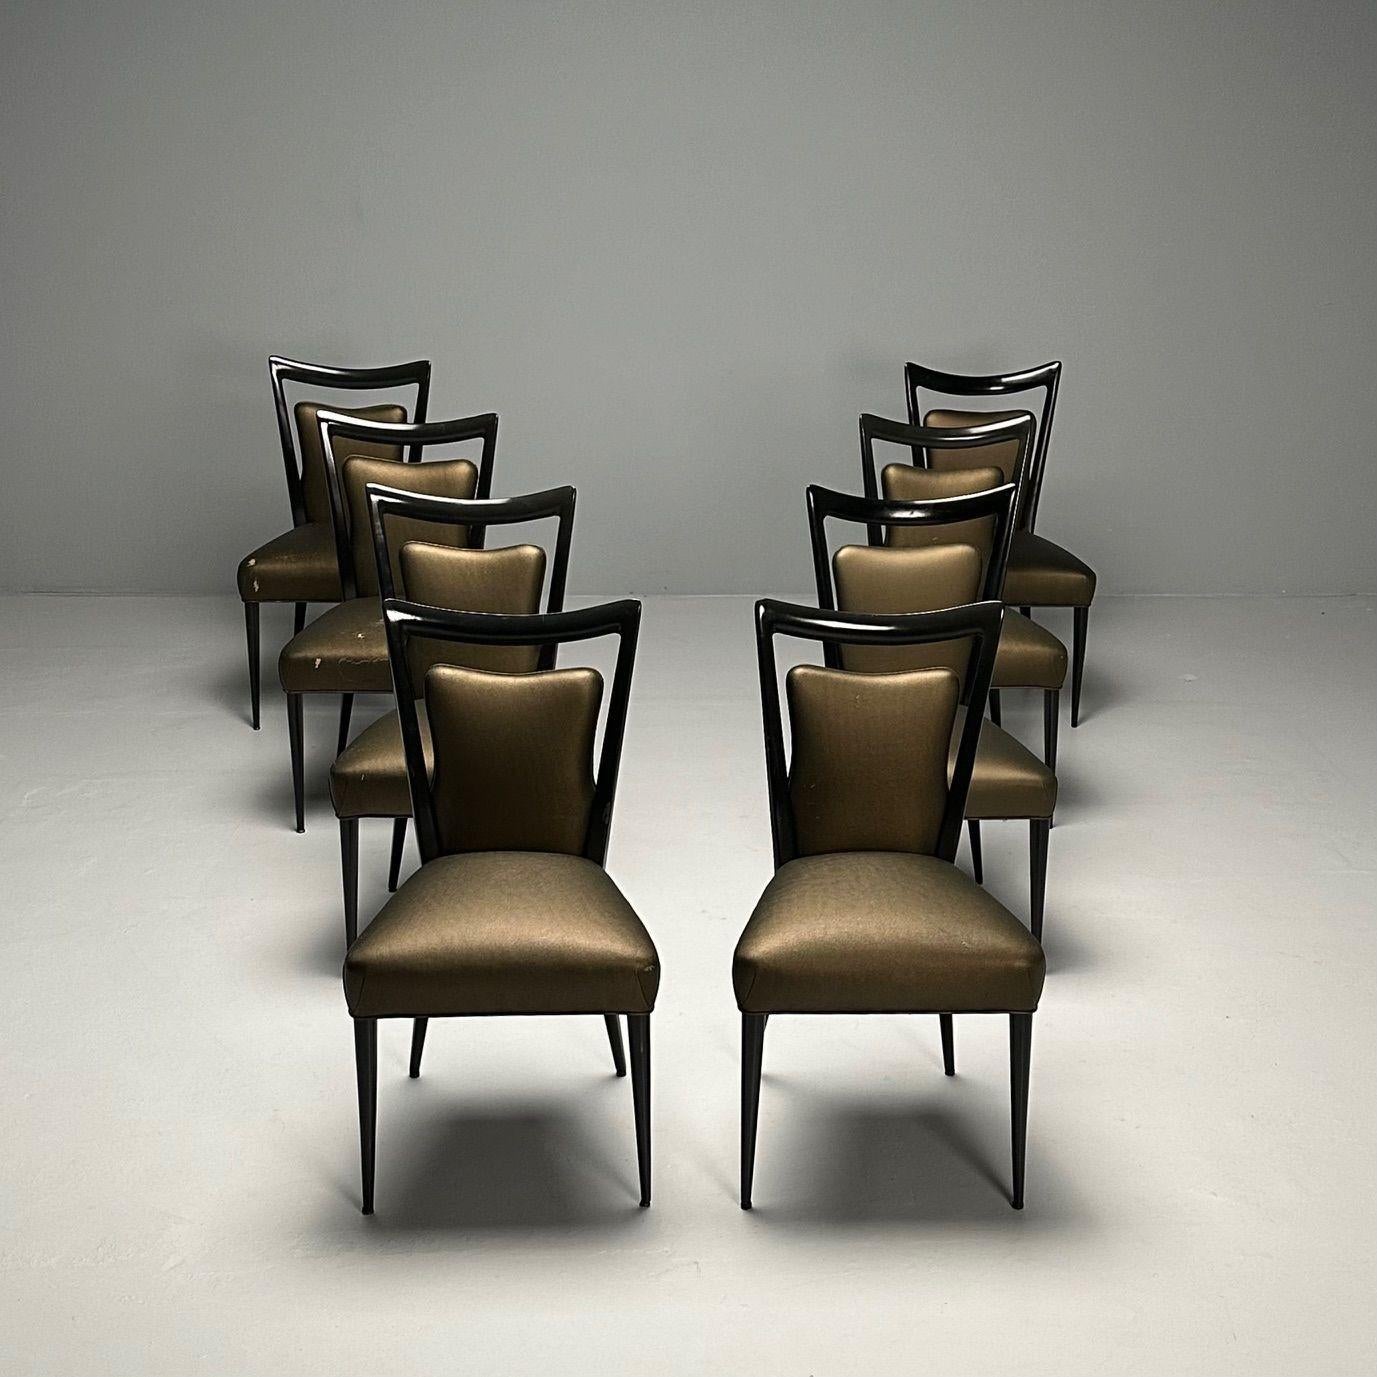 Melchiorre Bega, modernité italienne du milieu du siècle, huit chaises de salle à manger, laqué noir

Ensemble de huit chaises de salle à manger conçues par Melchiorre Bega (1898-1976) pour l'hôtel Bristol à Merano, Italie, vers les années 1950. Une